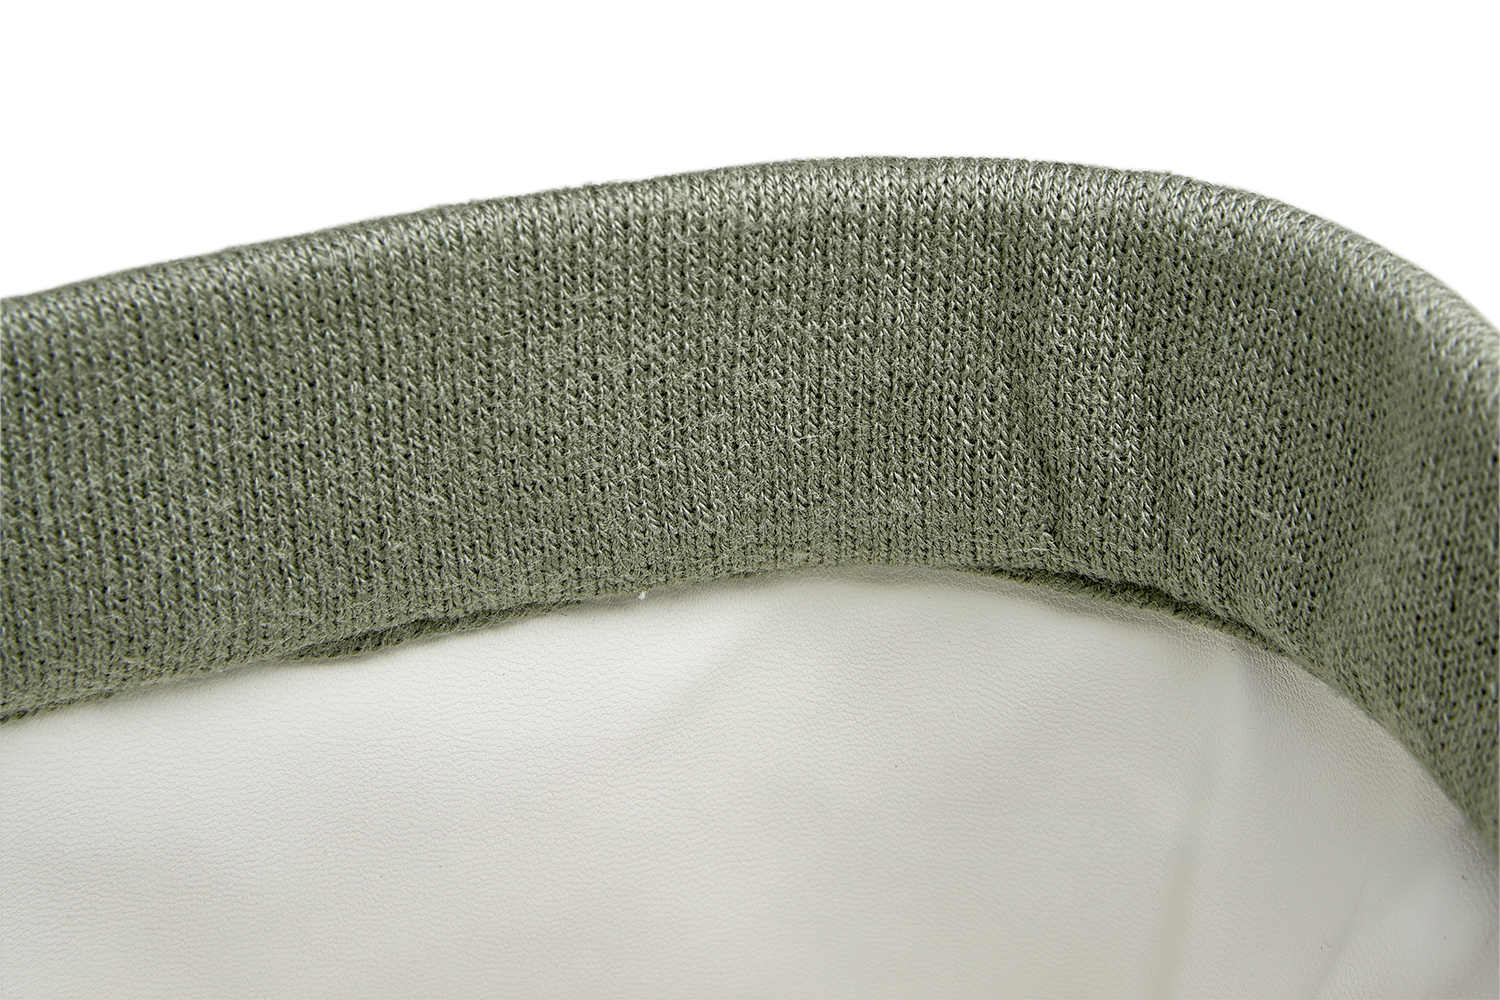 Wickeltischkörbchen Knit Basic - forest green - Medium